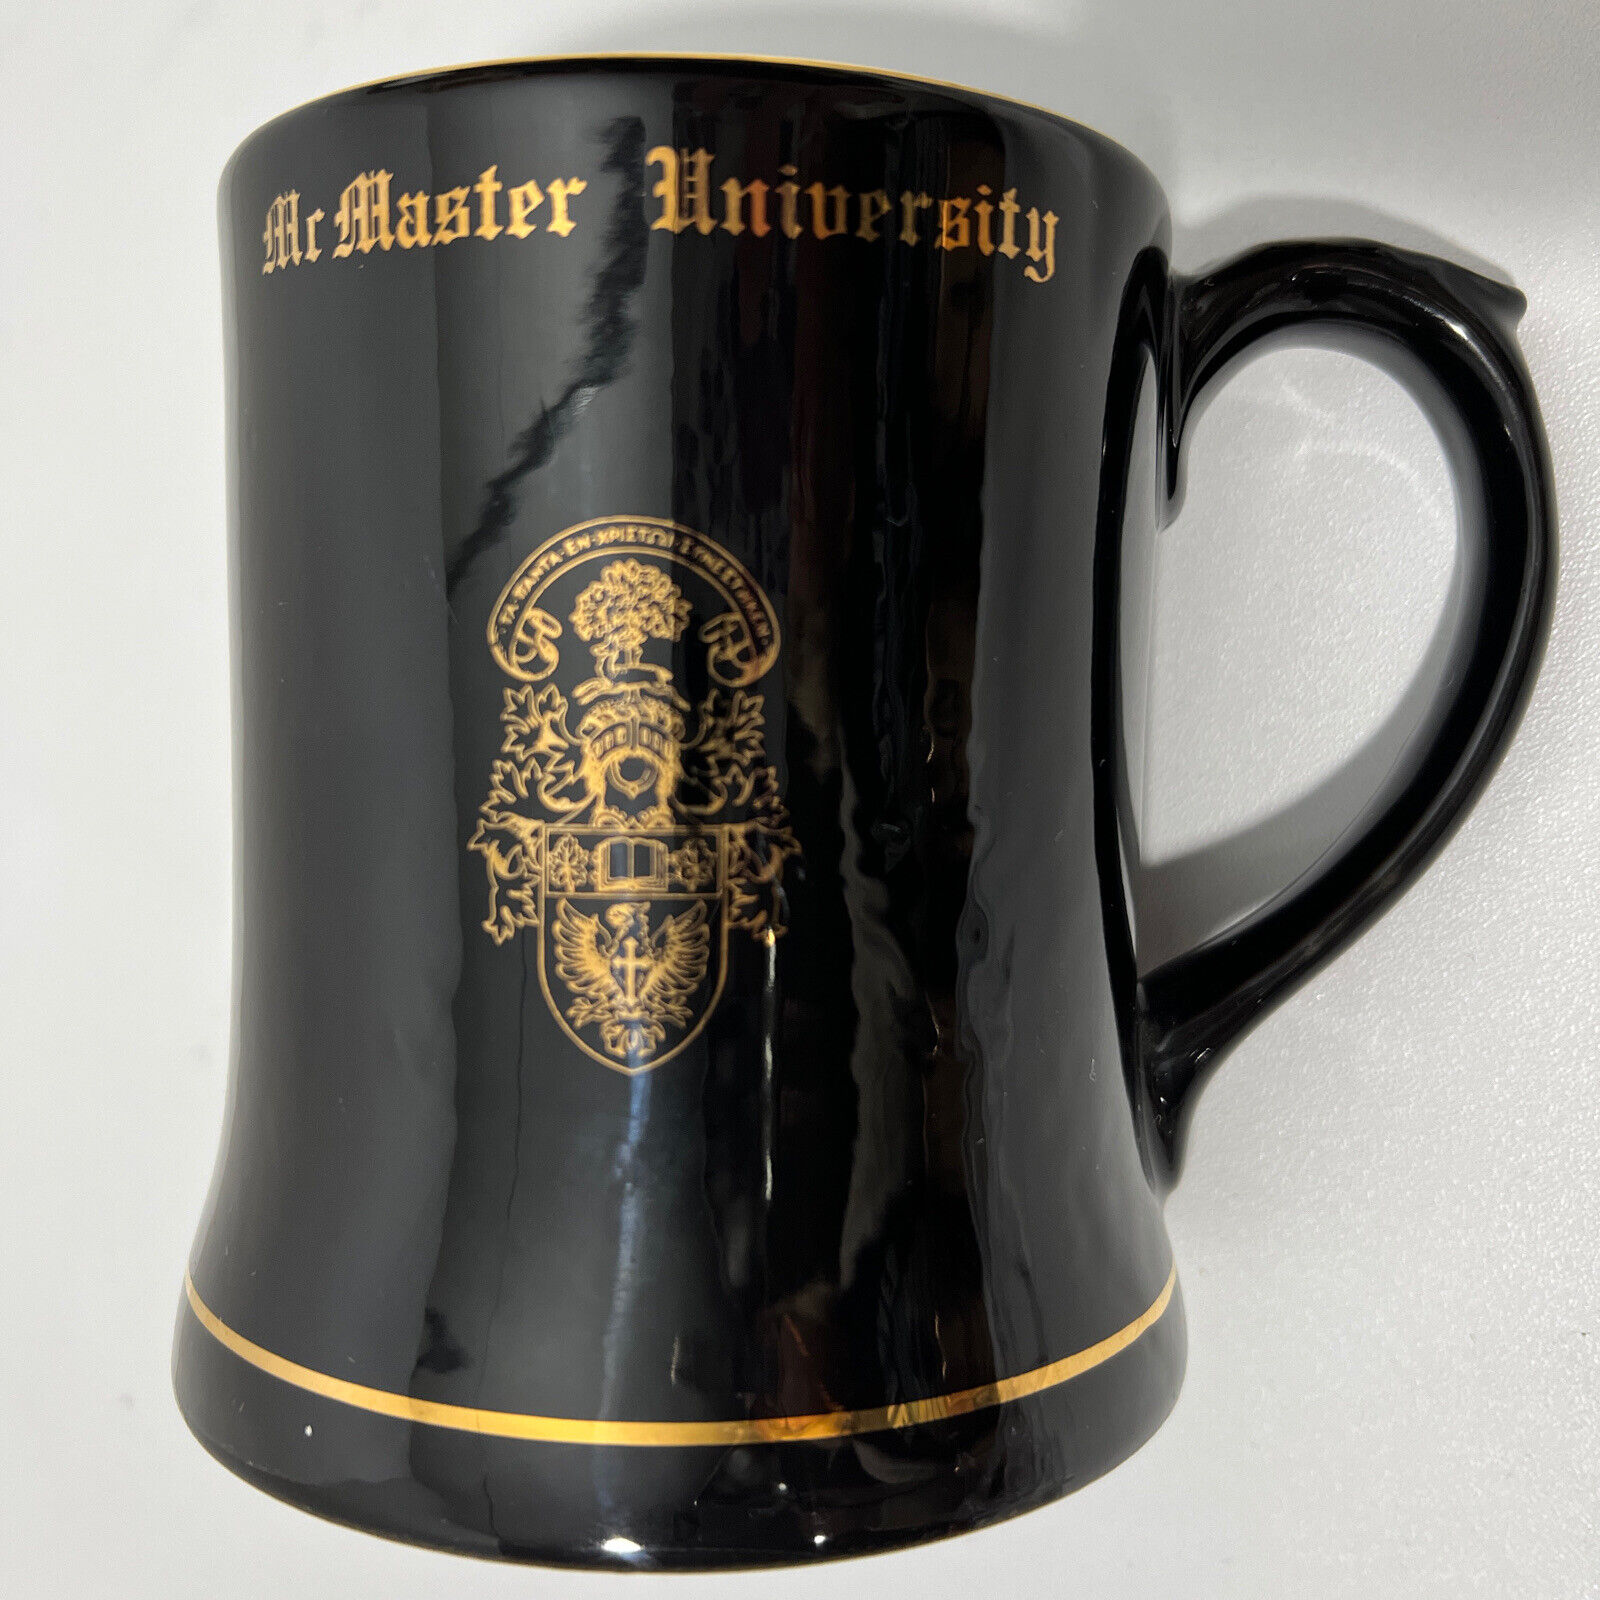 Mr Master University Wade Ireland Mug Barware Black Gold Porcelain 5\